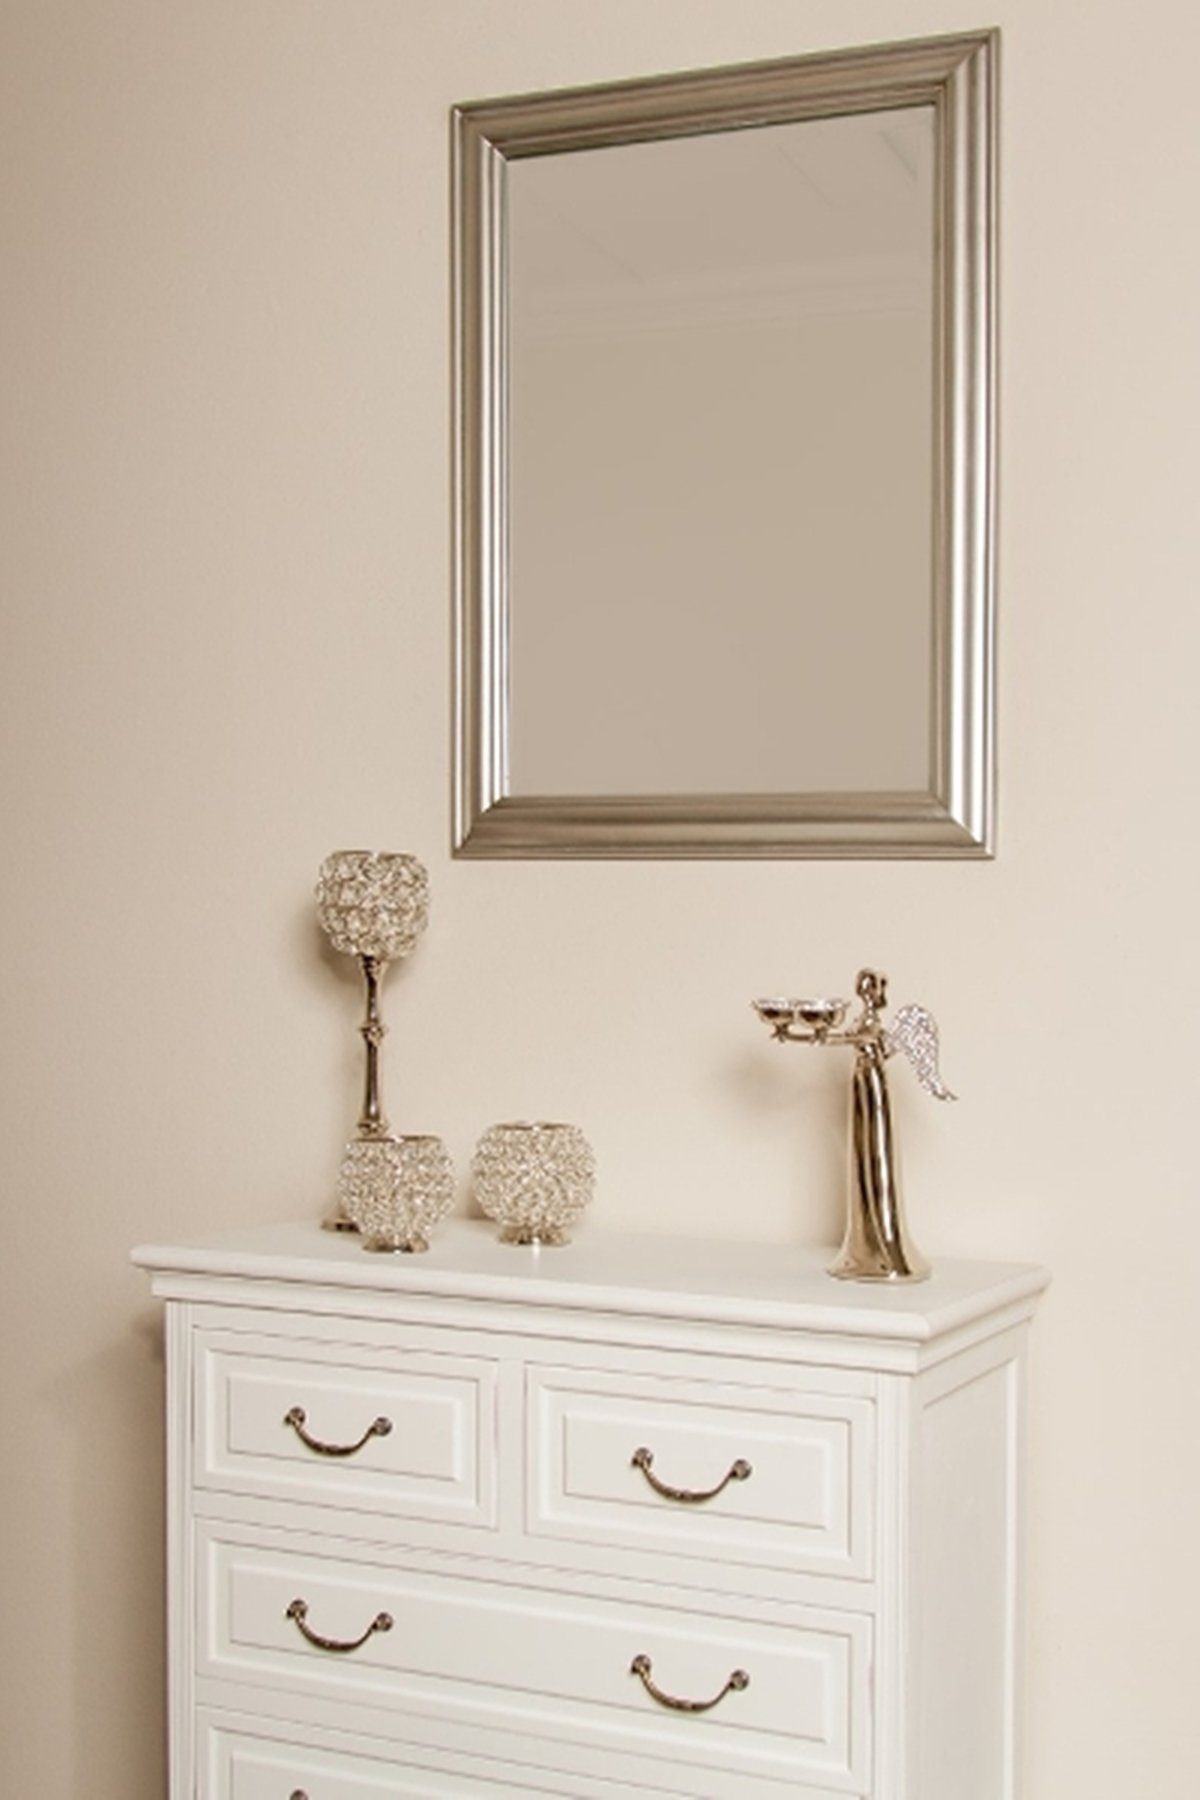 elbmöbel Wandspiegel Spiegel Silber eleganter 82cm, 82x62x7 cm Holzrahmen | Silber Silber schlicht silber Wandspiegel: Landhausstil